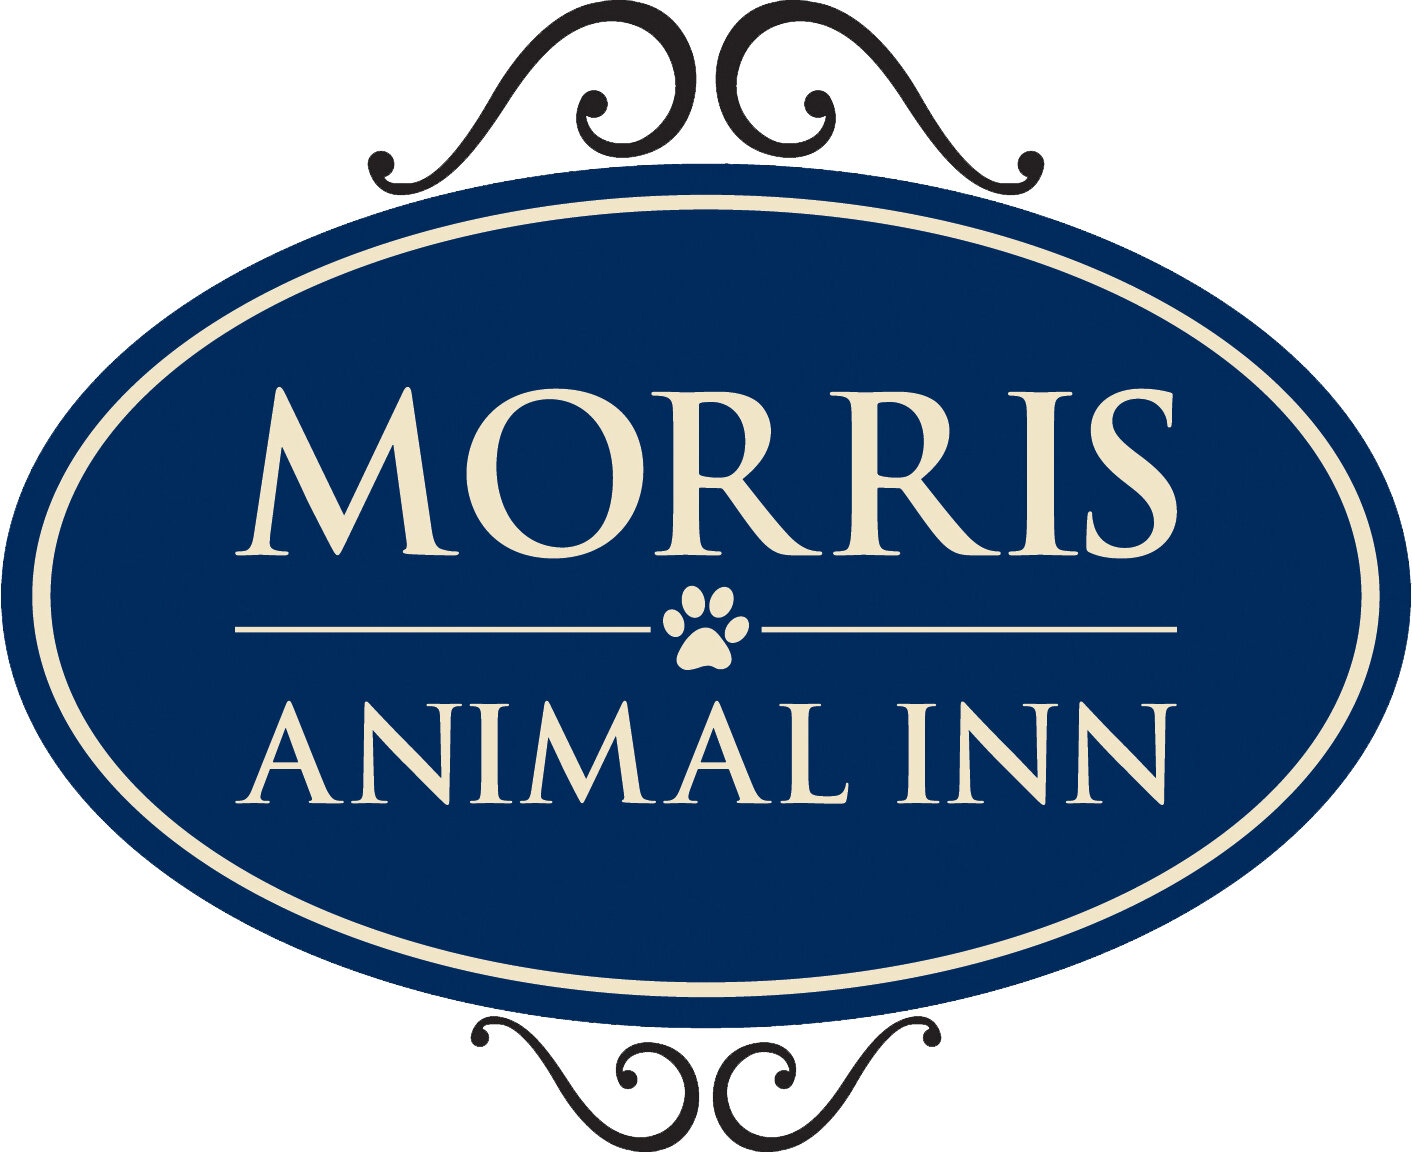 Morris Animal Inn Logo.jpg